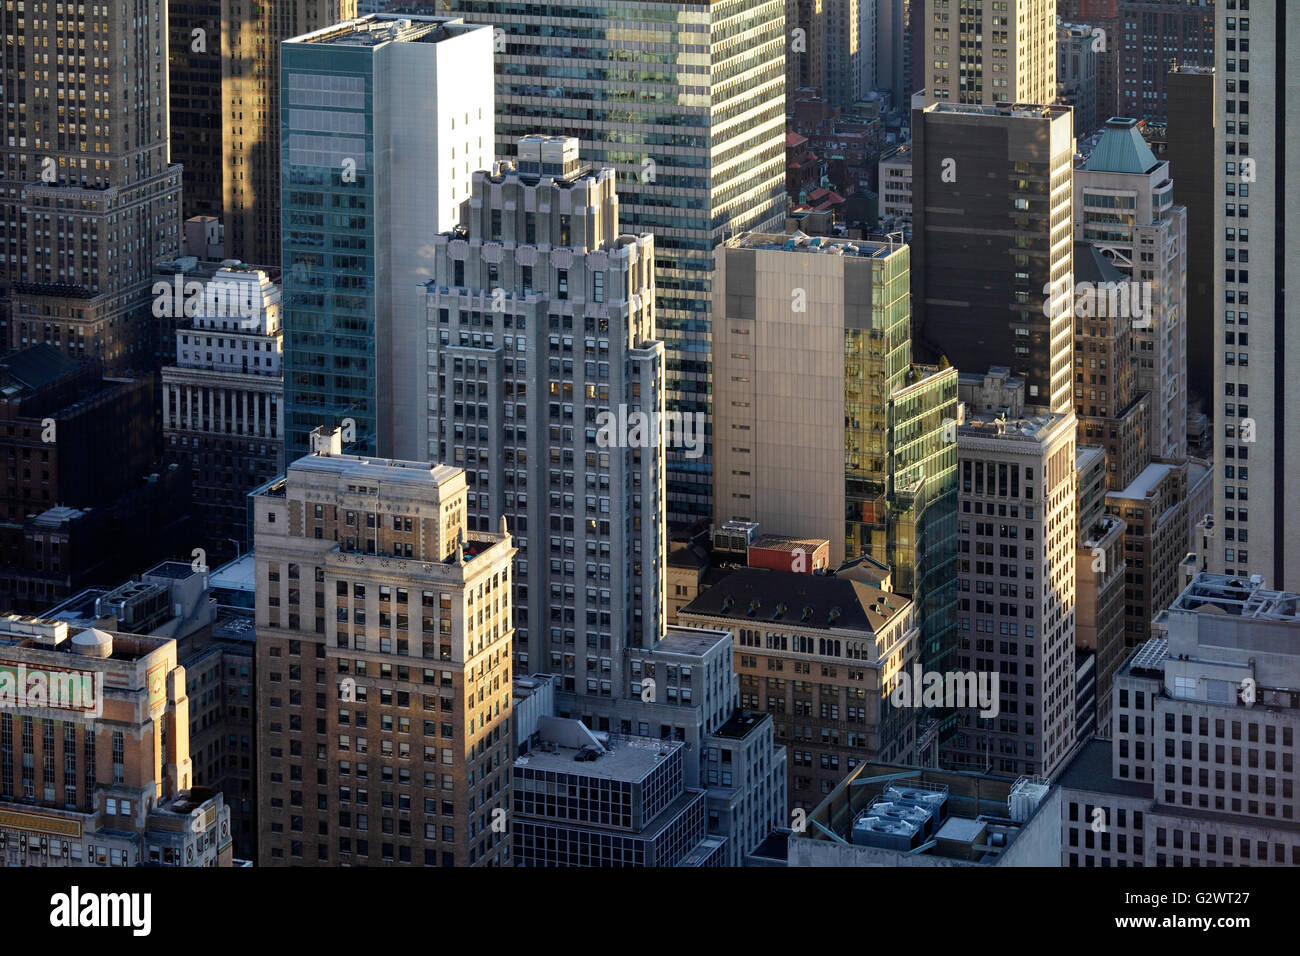 26.10.2015, New York City, New York, USA - Wolkenkratzer im Abendlicht in Manhattan. 00P151026D238CAROEX. JPG - nicht für den Verkauf in G E R M A N Y, A U S T R I A S W I T Z E R L A N D [MODEL-RELEASE: nicht anwendbar, PROPERTY-RELEASE: Nein, (C) Caro Fotoagentur / Muhs, http://www.caro-images.com, info@carofoto.pl - jegliche Nutzung dieses Bildes unterliegt GEMA!] Stockfoto